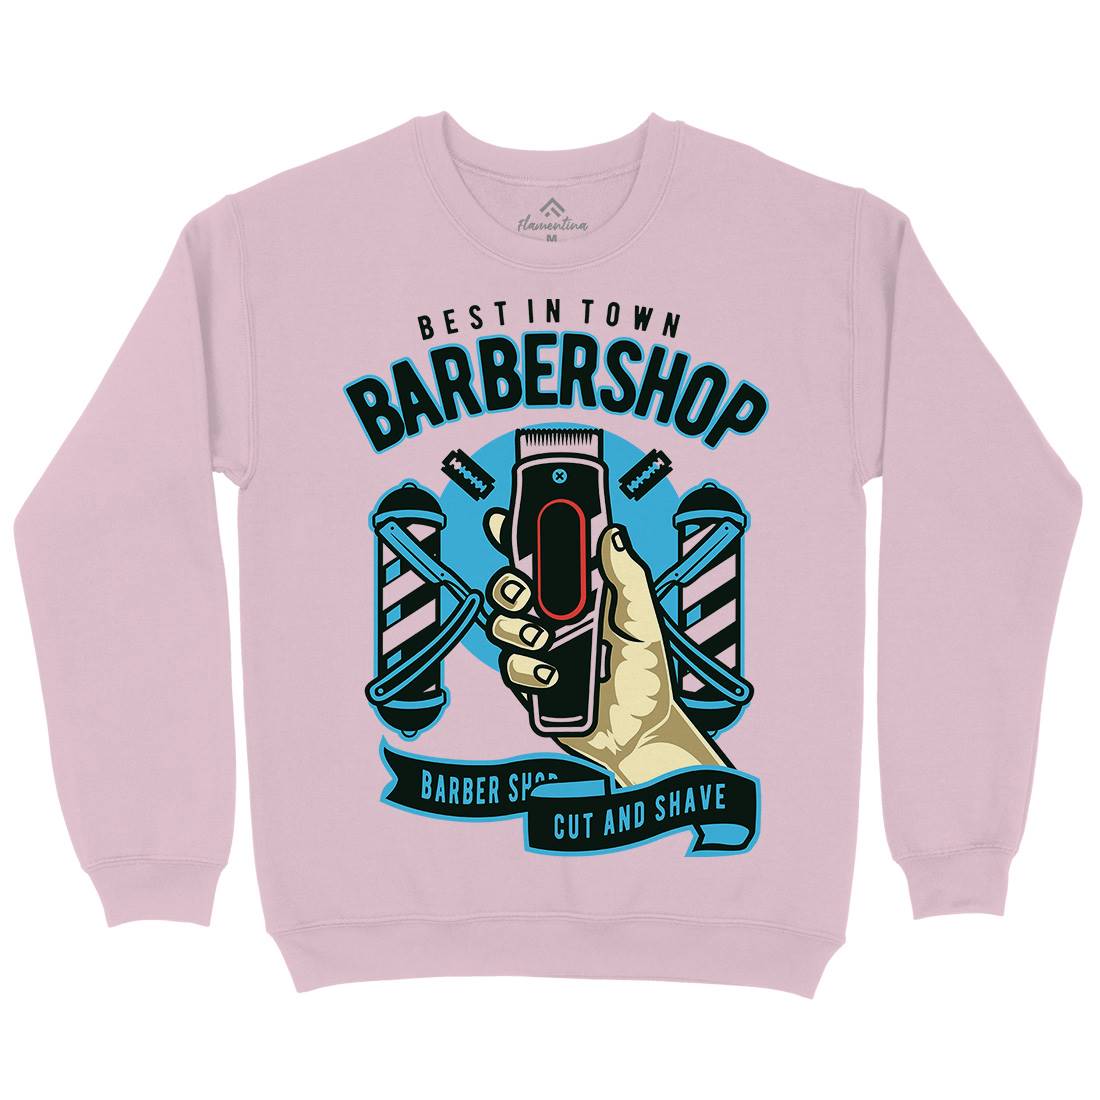 Barbershop Kids Crew Neck Sweatshirt Barber D506